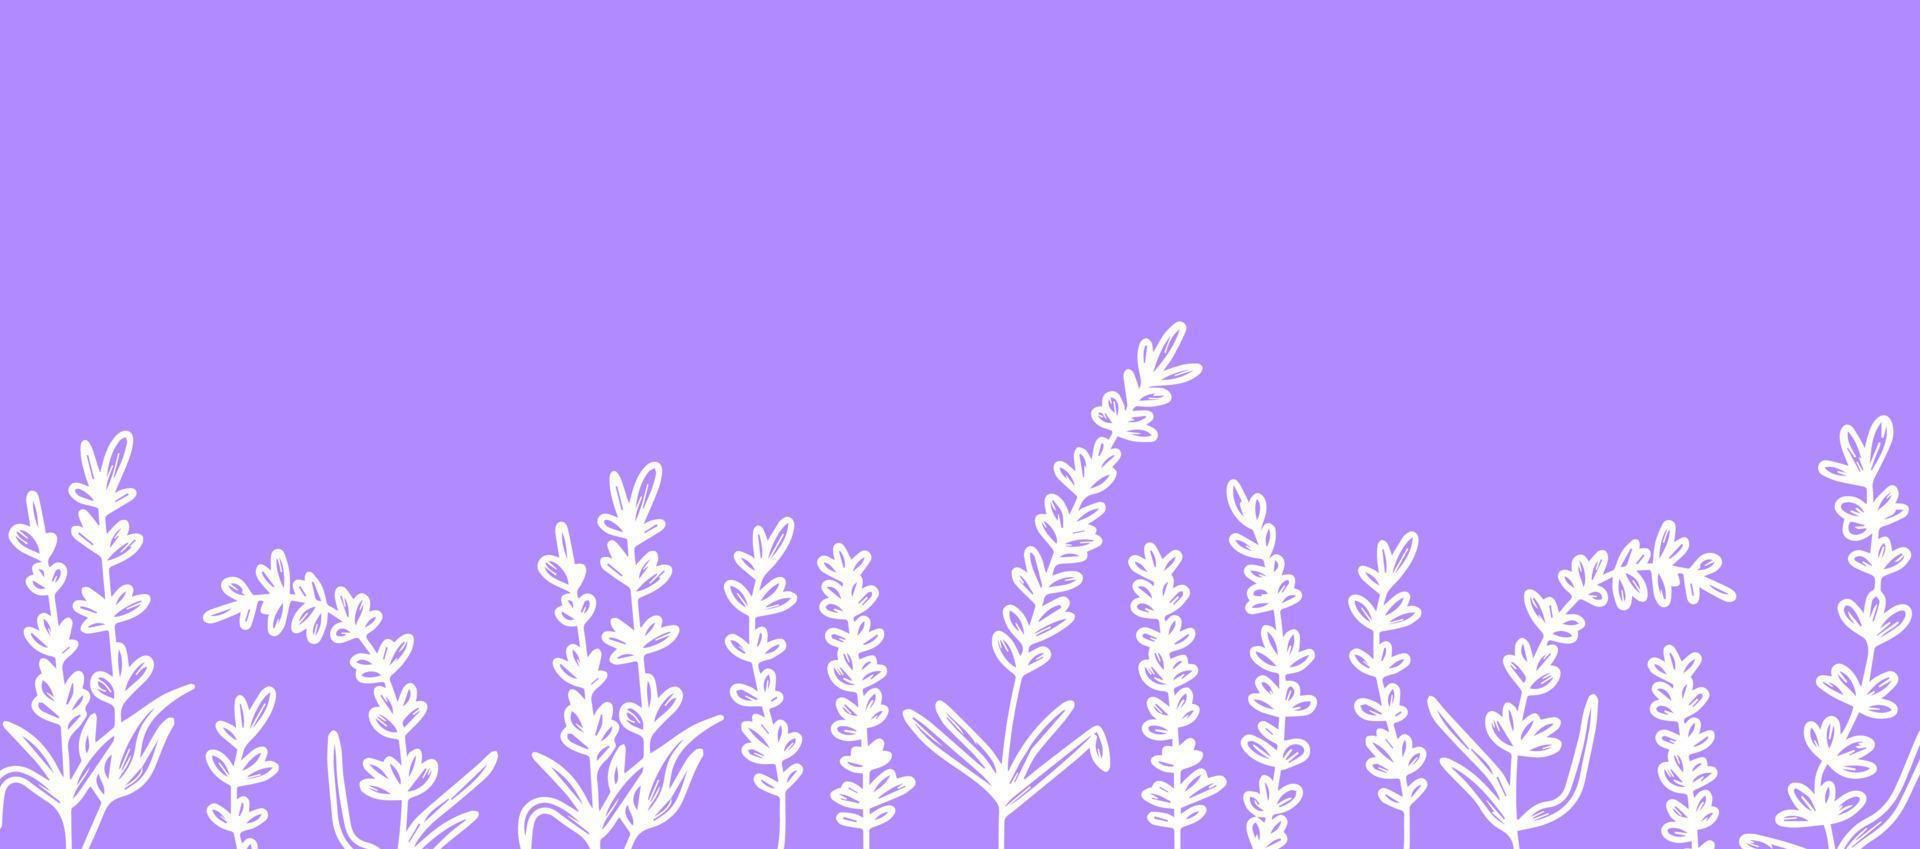 vacker bakgrund med handritade lavendelblommor, medicinska örter. att skapa en banderoll, affisch, vykort. vektor illustration lila bakgrund. begreppet fransk provence, en botanisk trend.